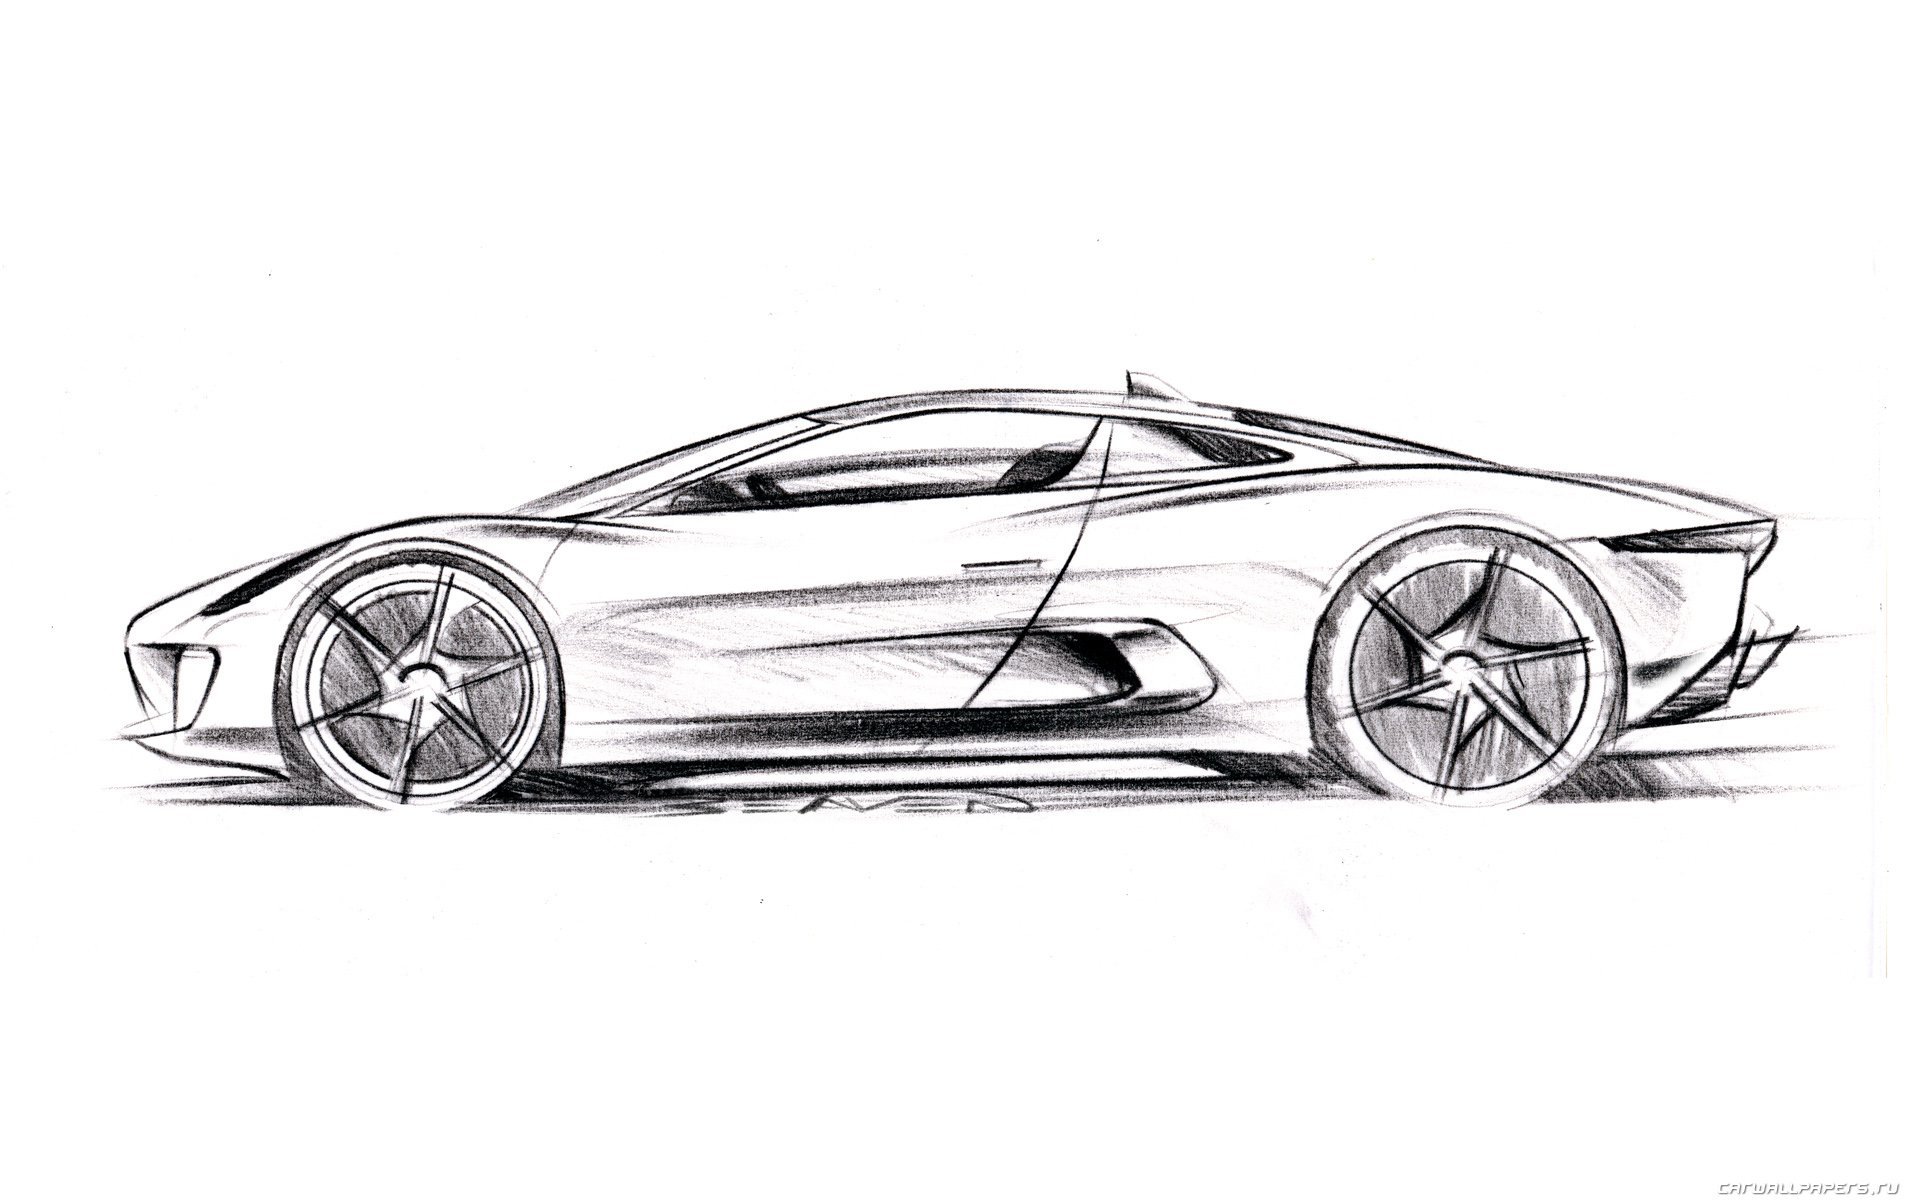 Машина рисунок графика. Автомобиль рисунок. Эскиз машины. Рисунок машины карандашом. Дизайнерские рисунки автомобилей.